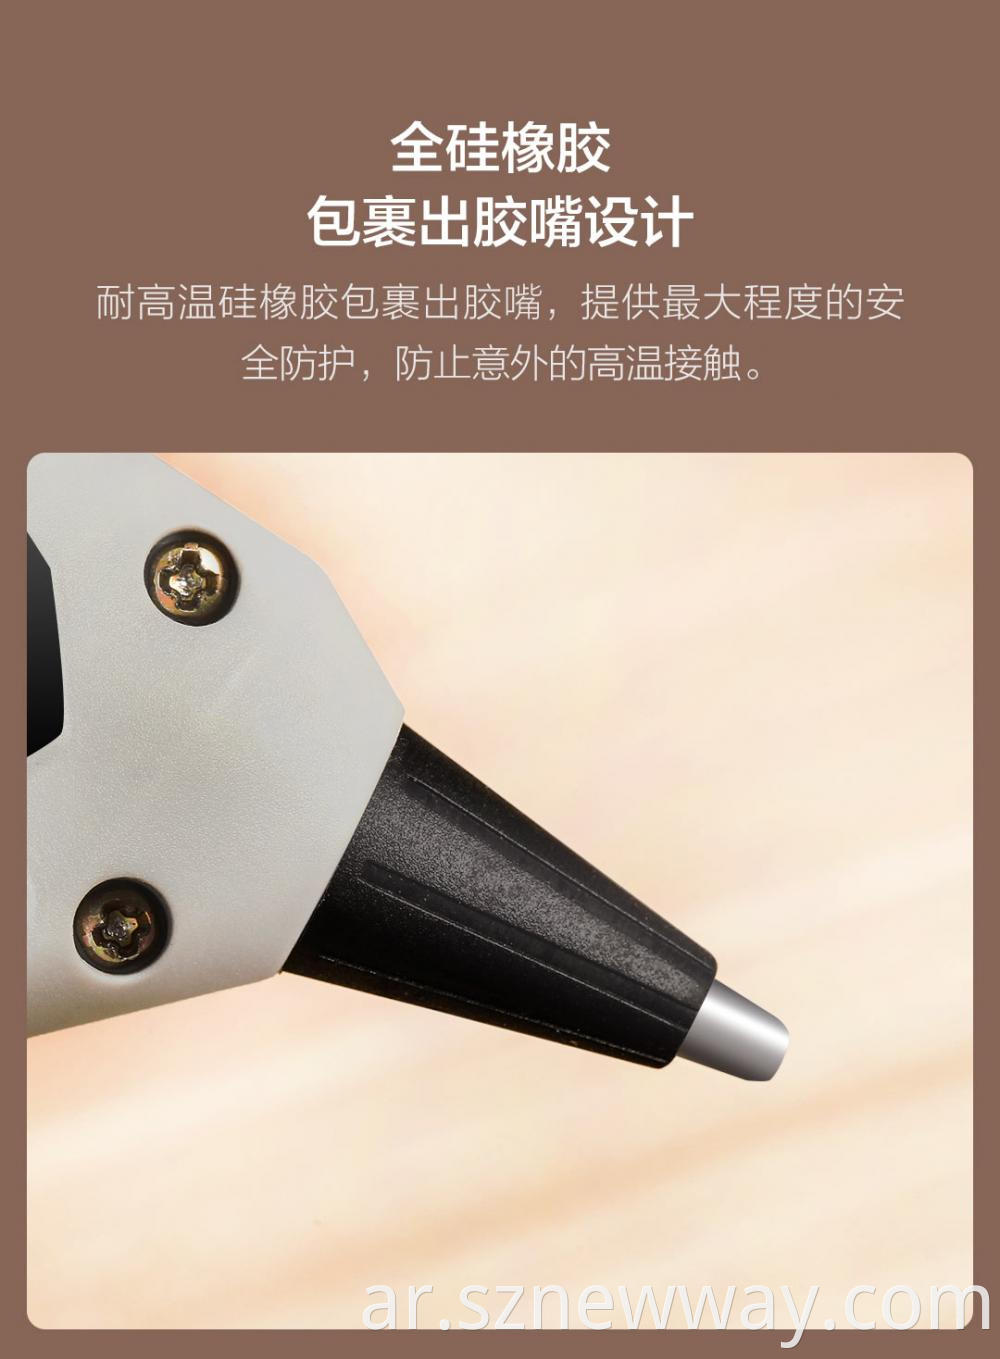 Ptc Glue Gun Xiaomi